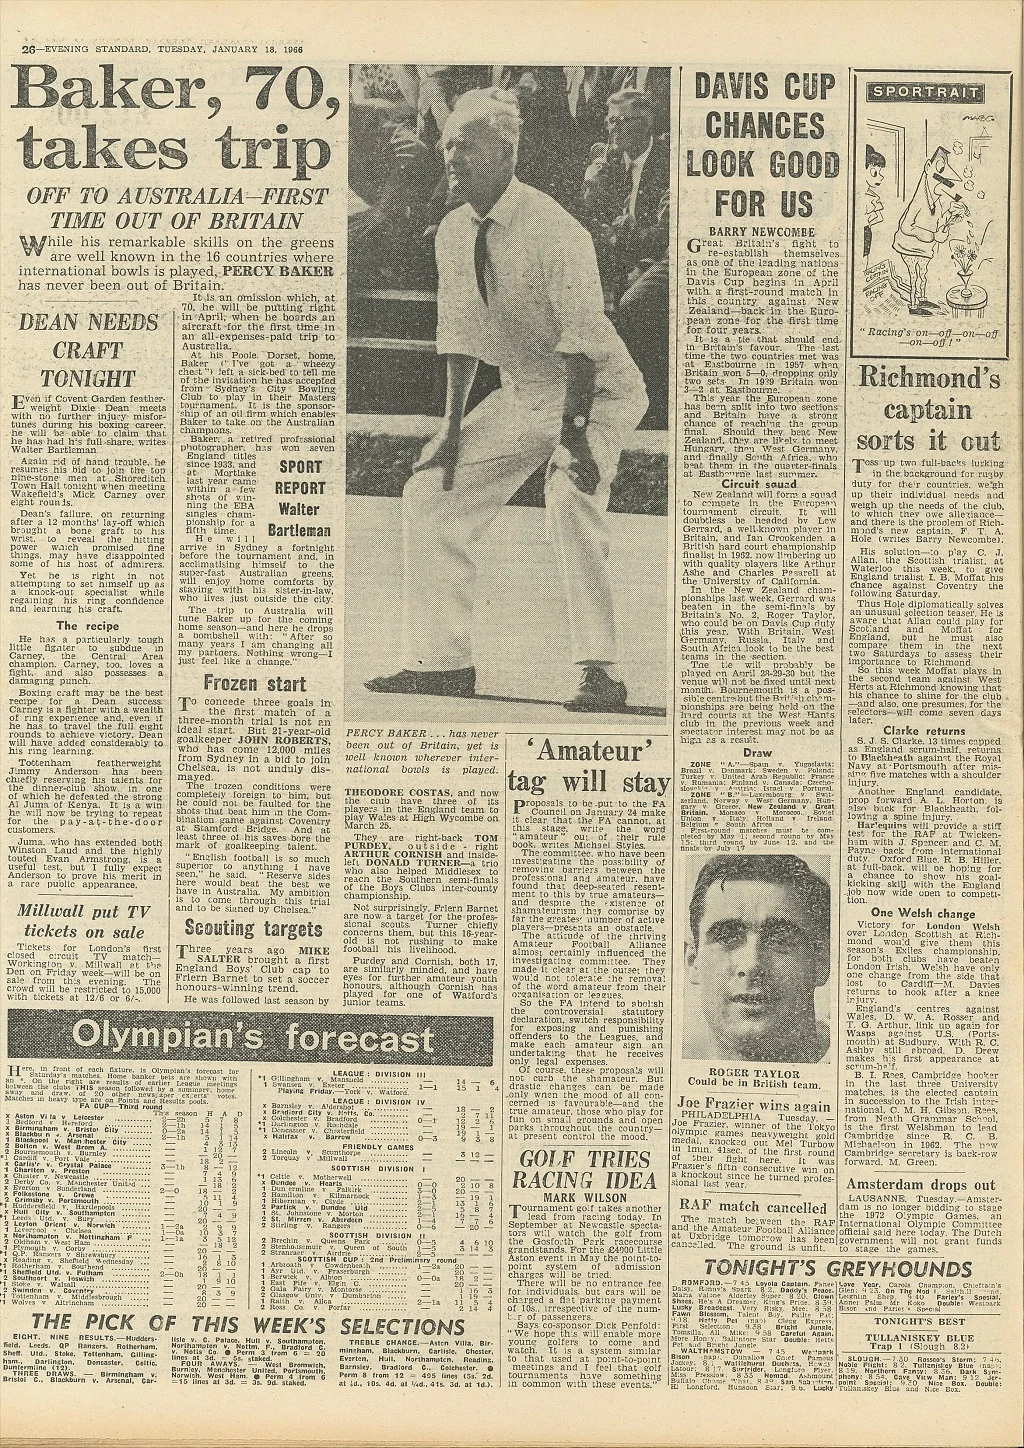 Zeitungsartikel der Evening Standard vom 18. Januar 1966 über die Australientour des 70-jährigen Percy Baker.